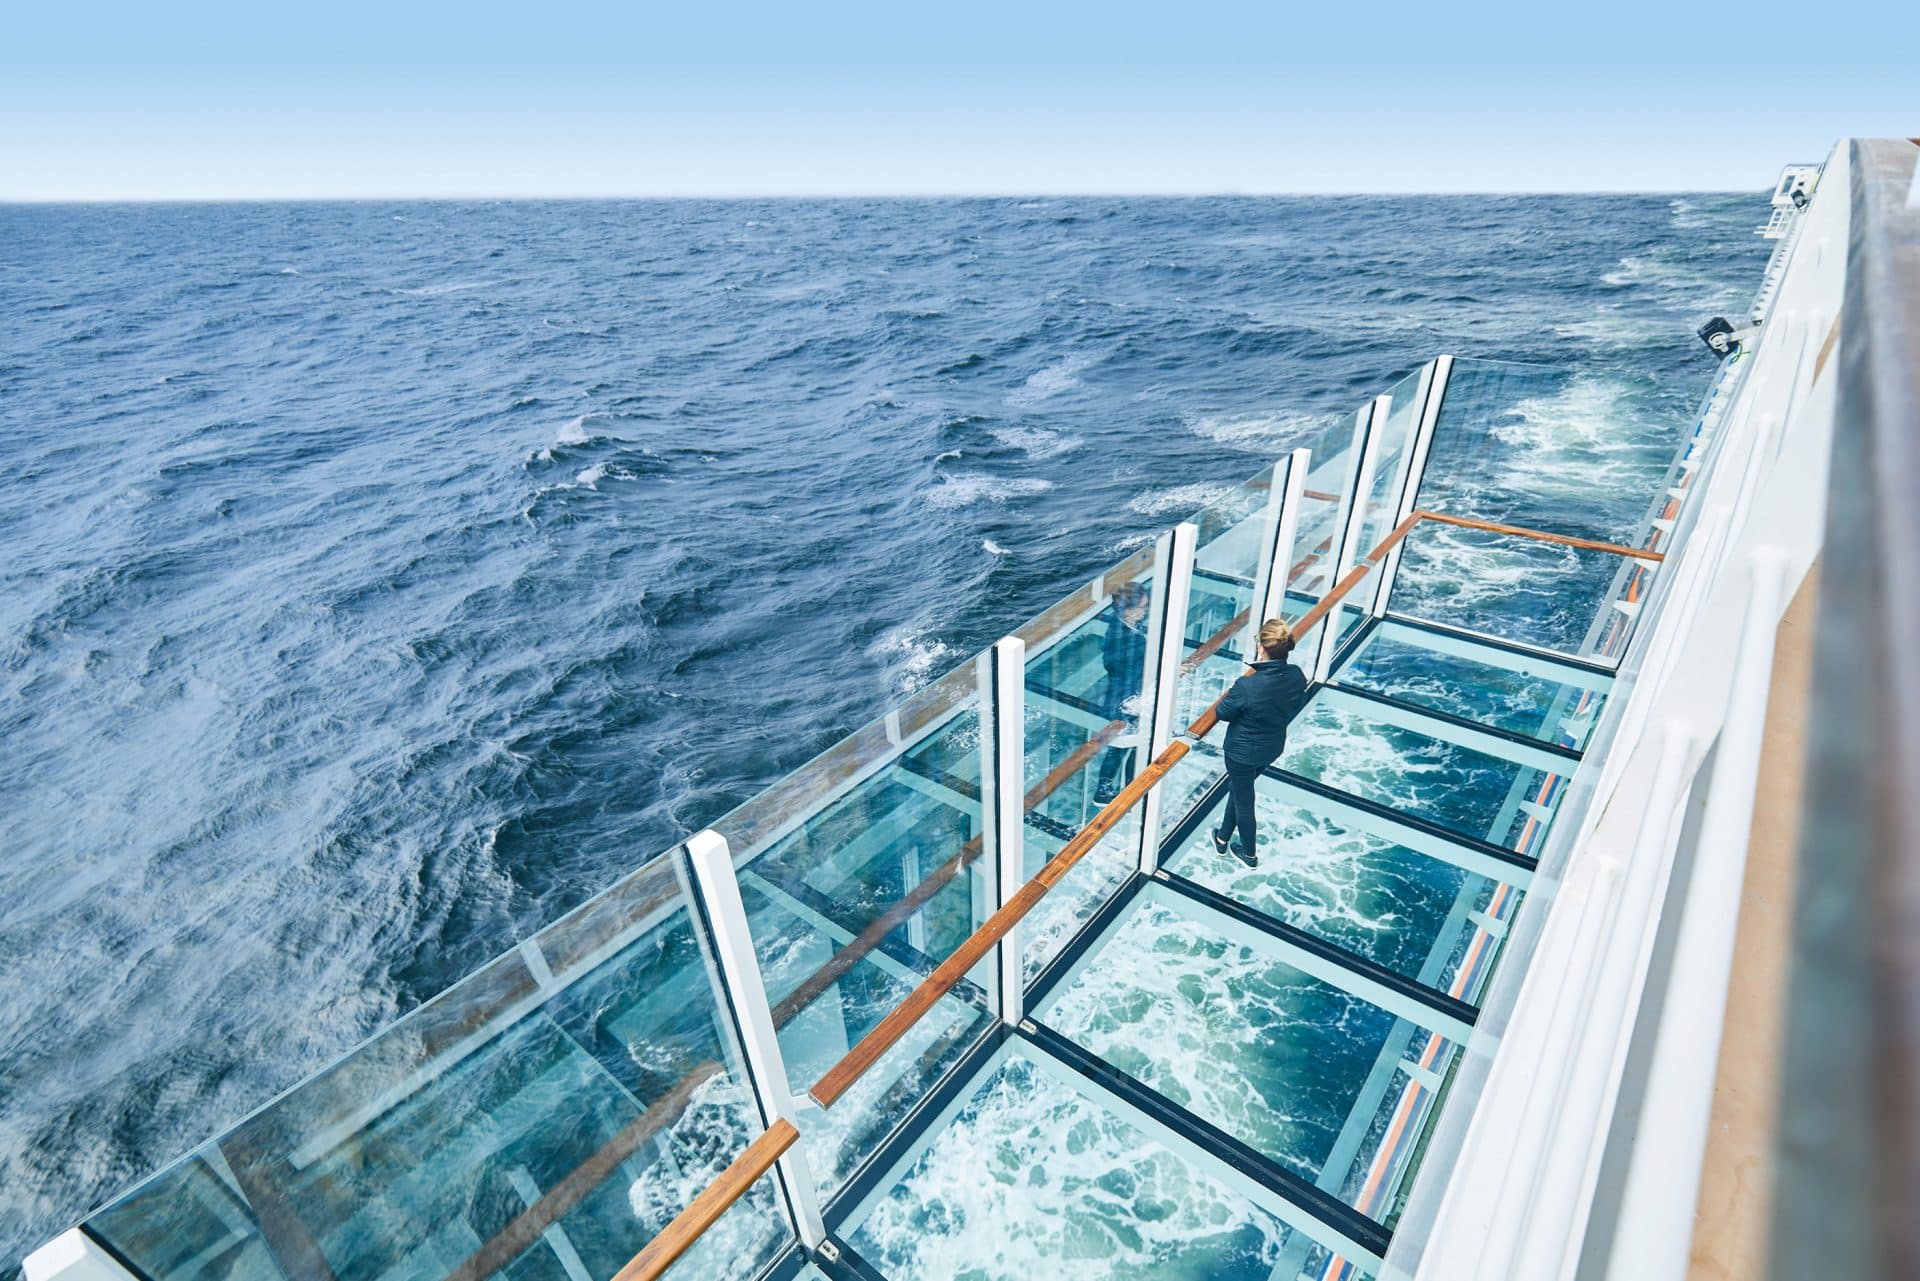 Zwei ausfahrbare gläserne Balkone geben dem Gast das Gefühl, direkt über dem Wasser zu schweben. Foto: © Hapag-Lloyd Cruises / Christian Wyrwa